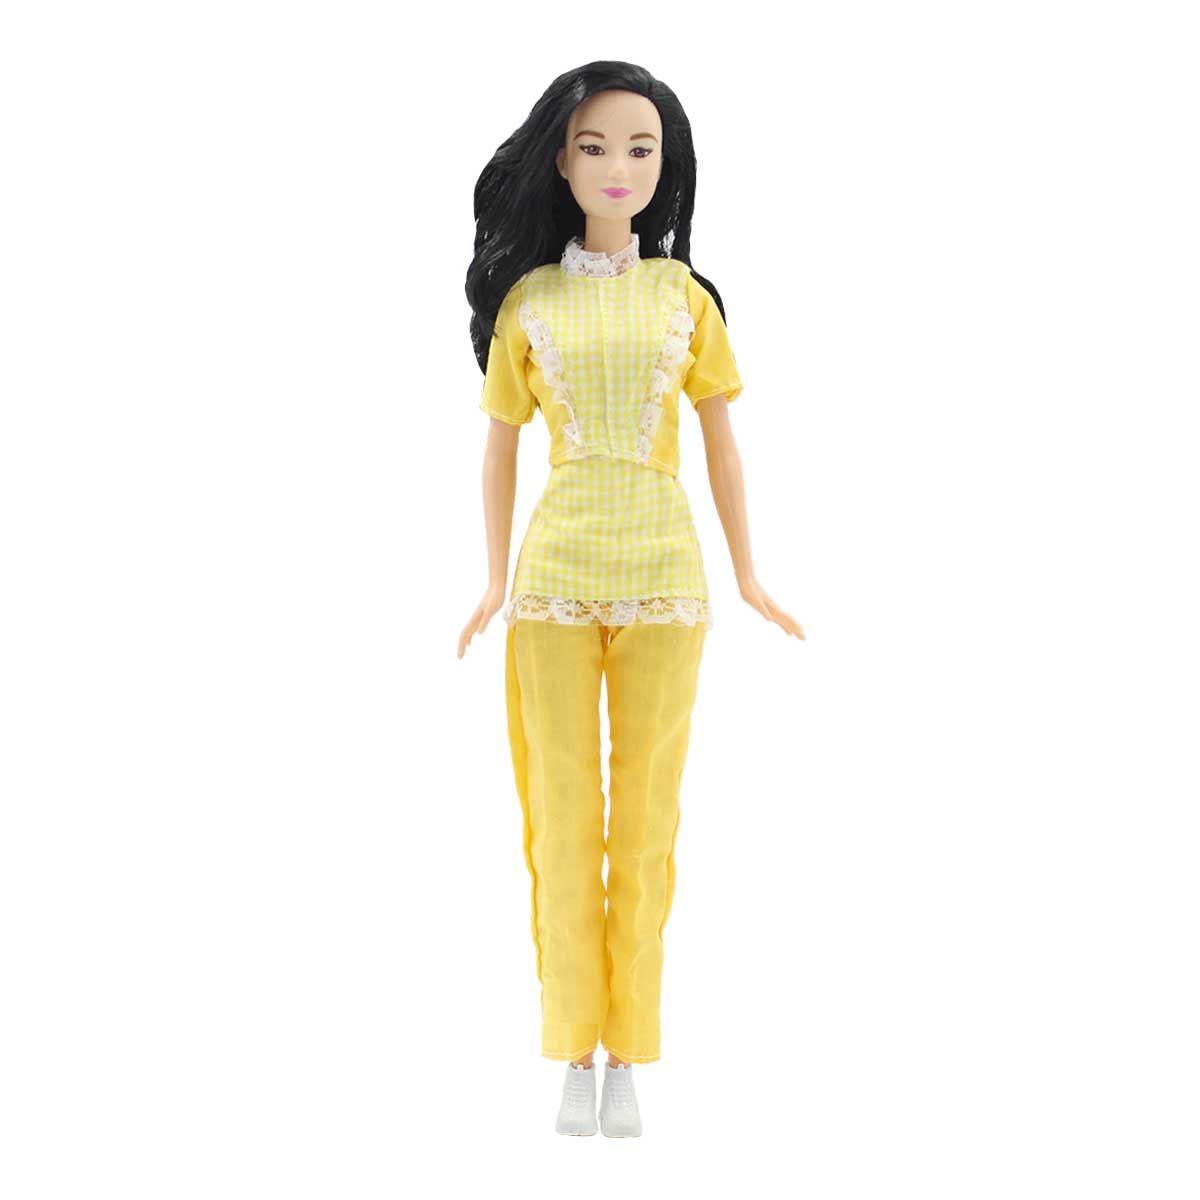 Одежда Dolls Accessories для Барби и других кукол 29 см Горничная желтый староста горничная том 11